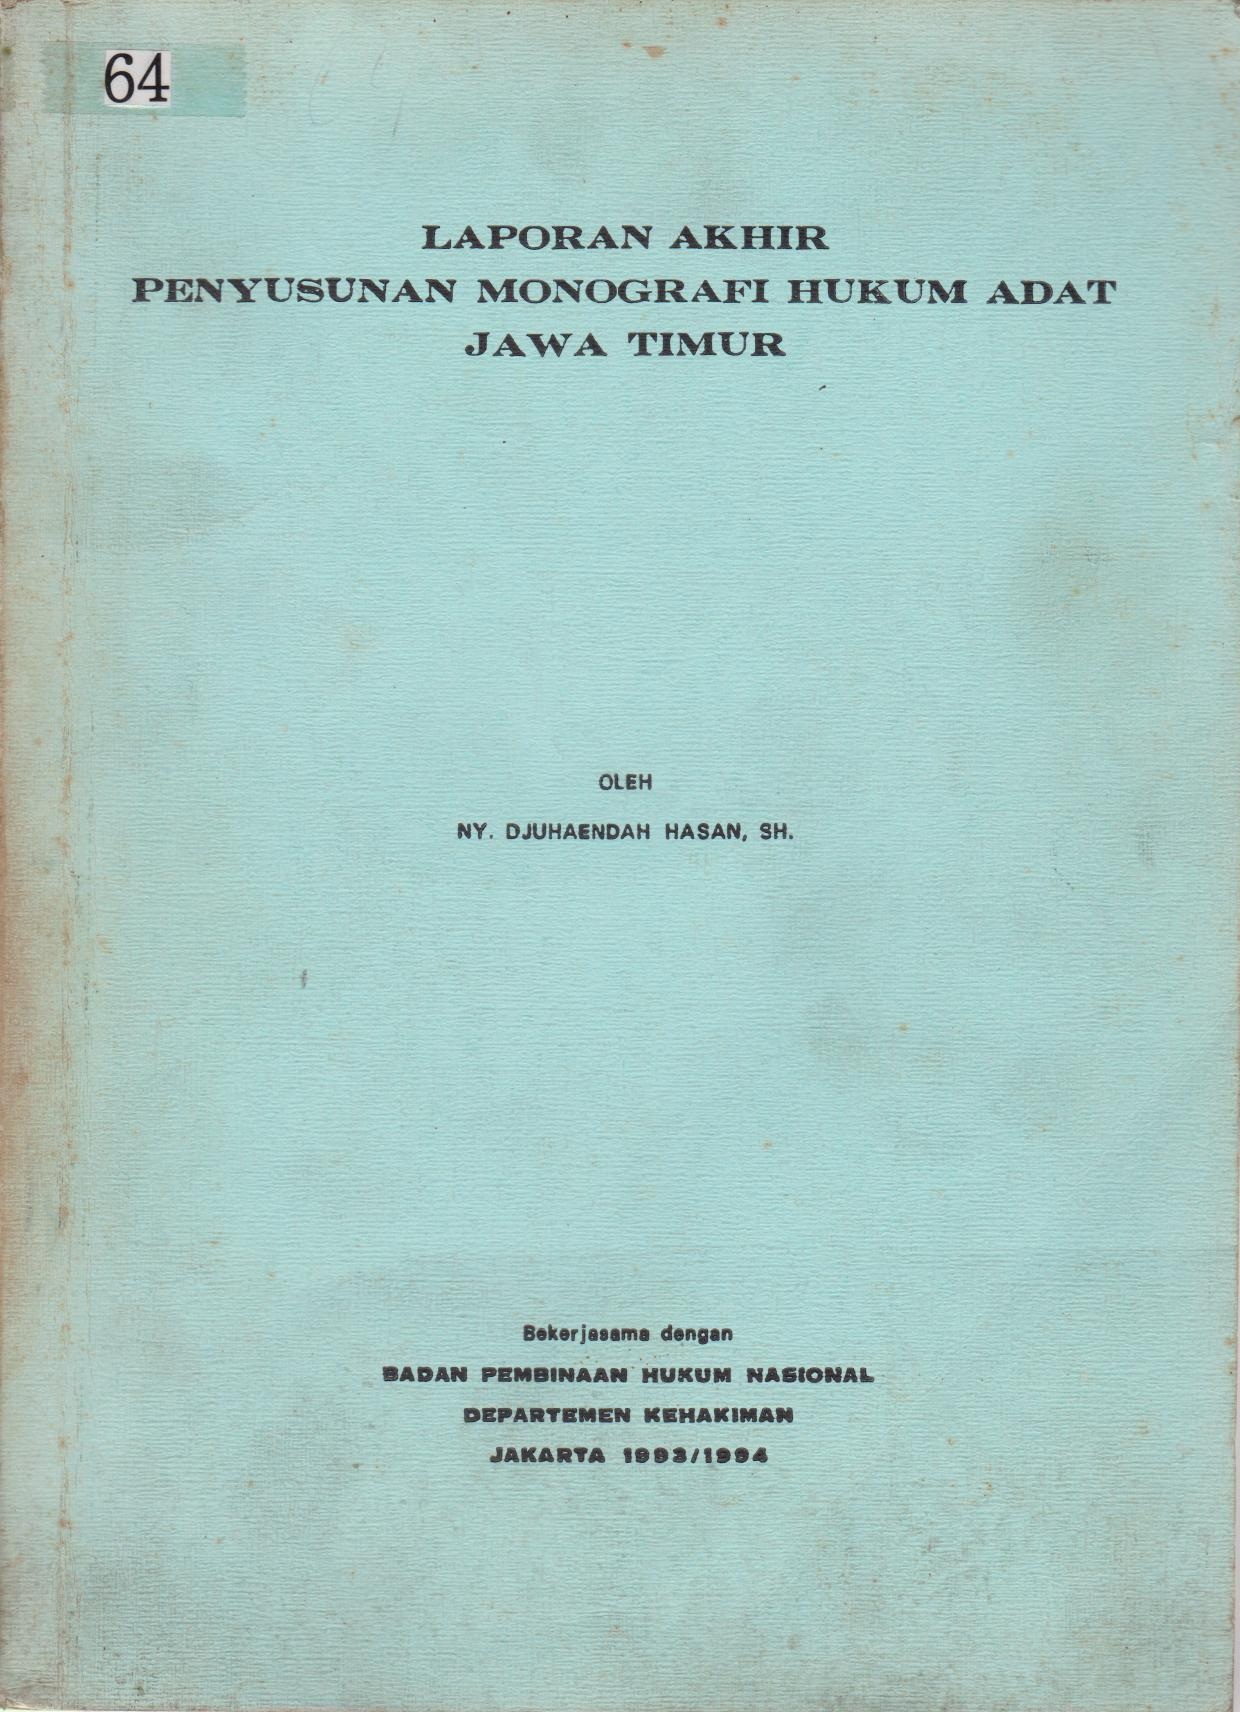 Laporan Akhir Penyusunan Monografi Hukum Adat Jawa Timur